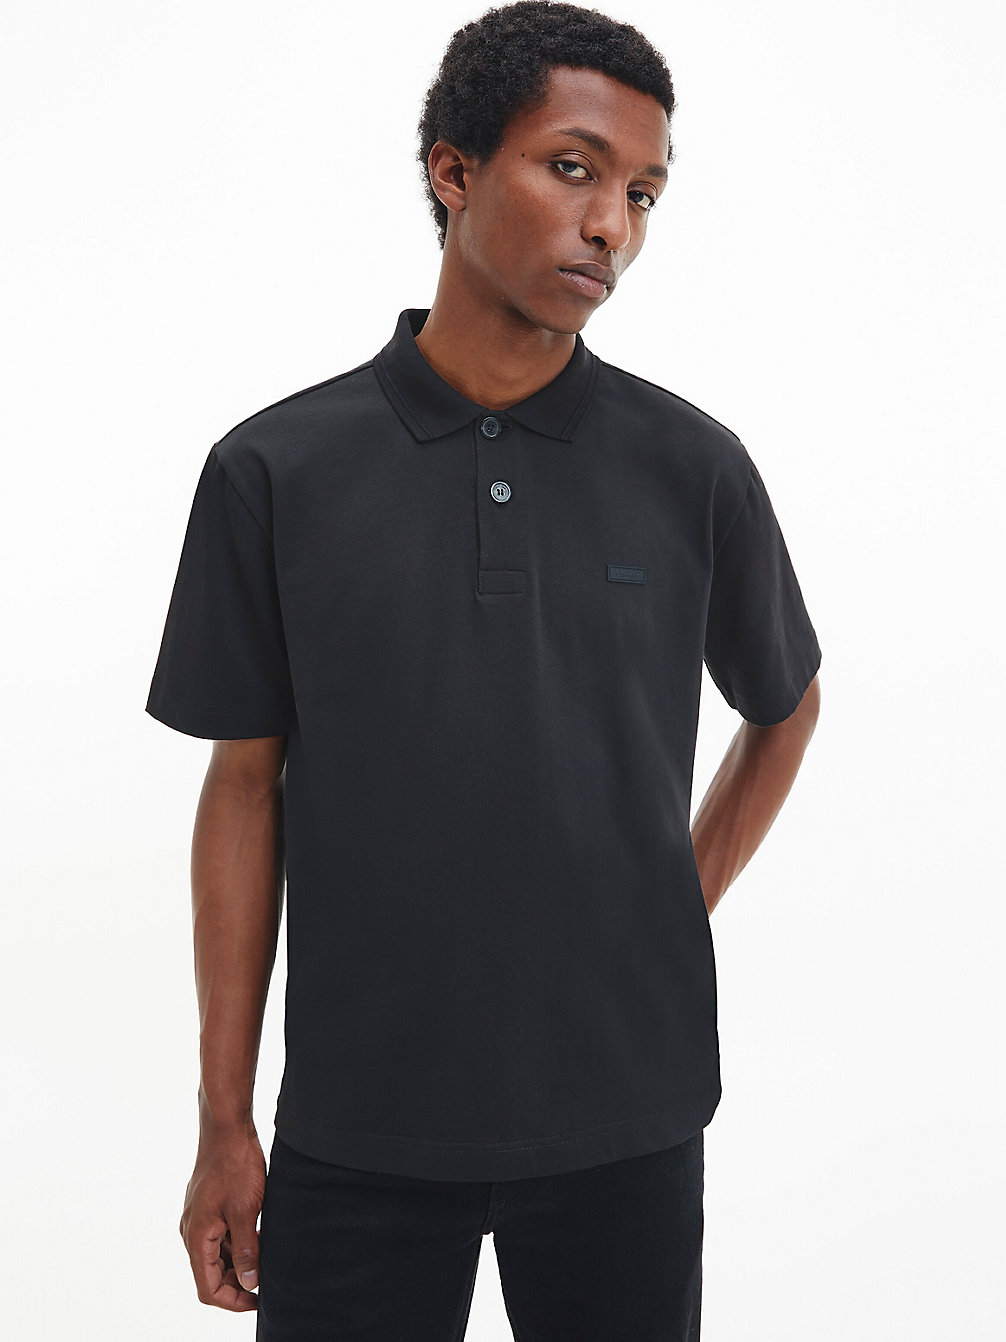 T-Shirt Modello Polo In Cotone Biologico Taglio Relaxed > CK BLACK > undefined uomo > Calvin Klein